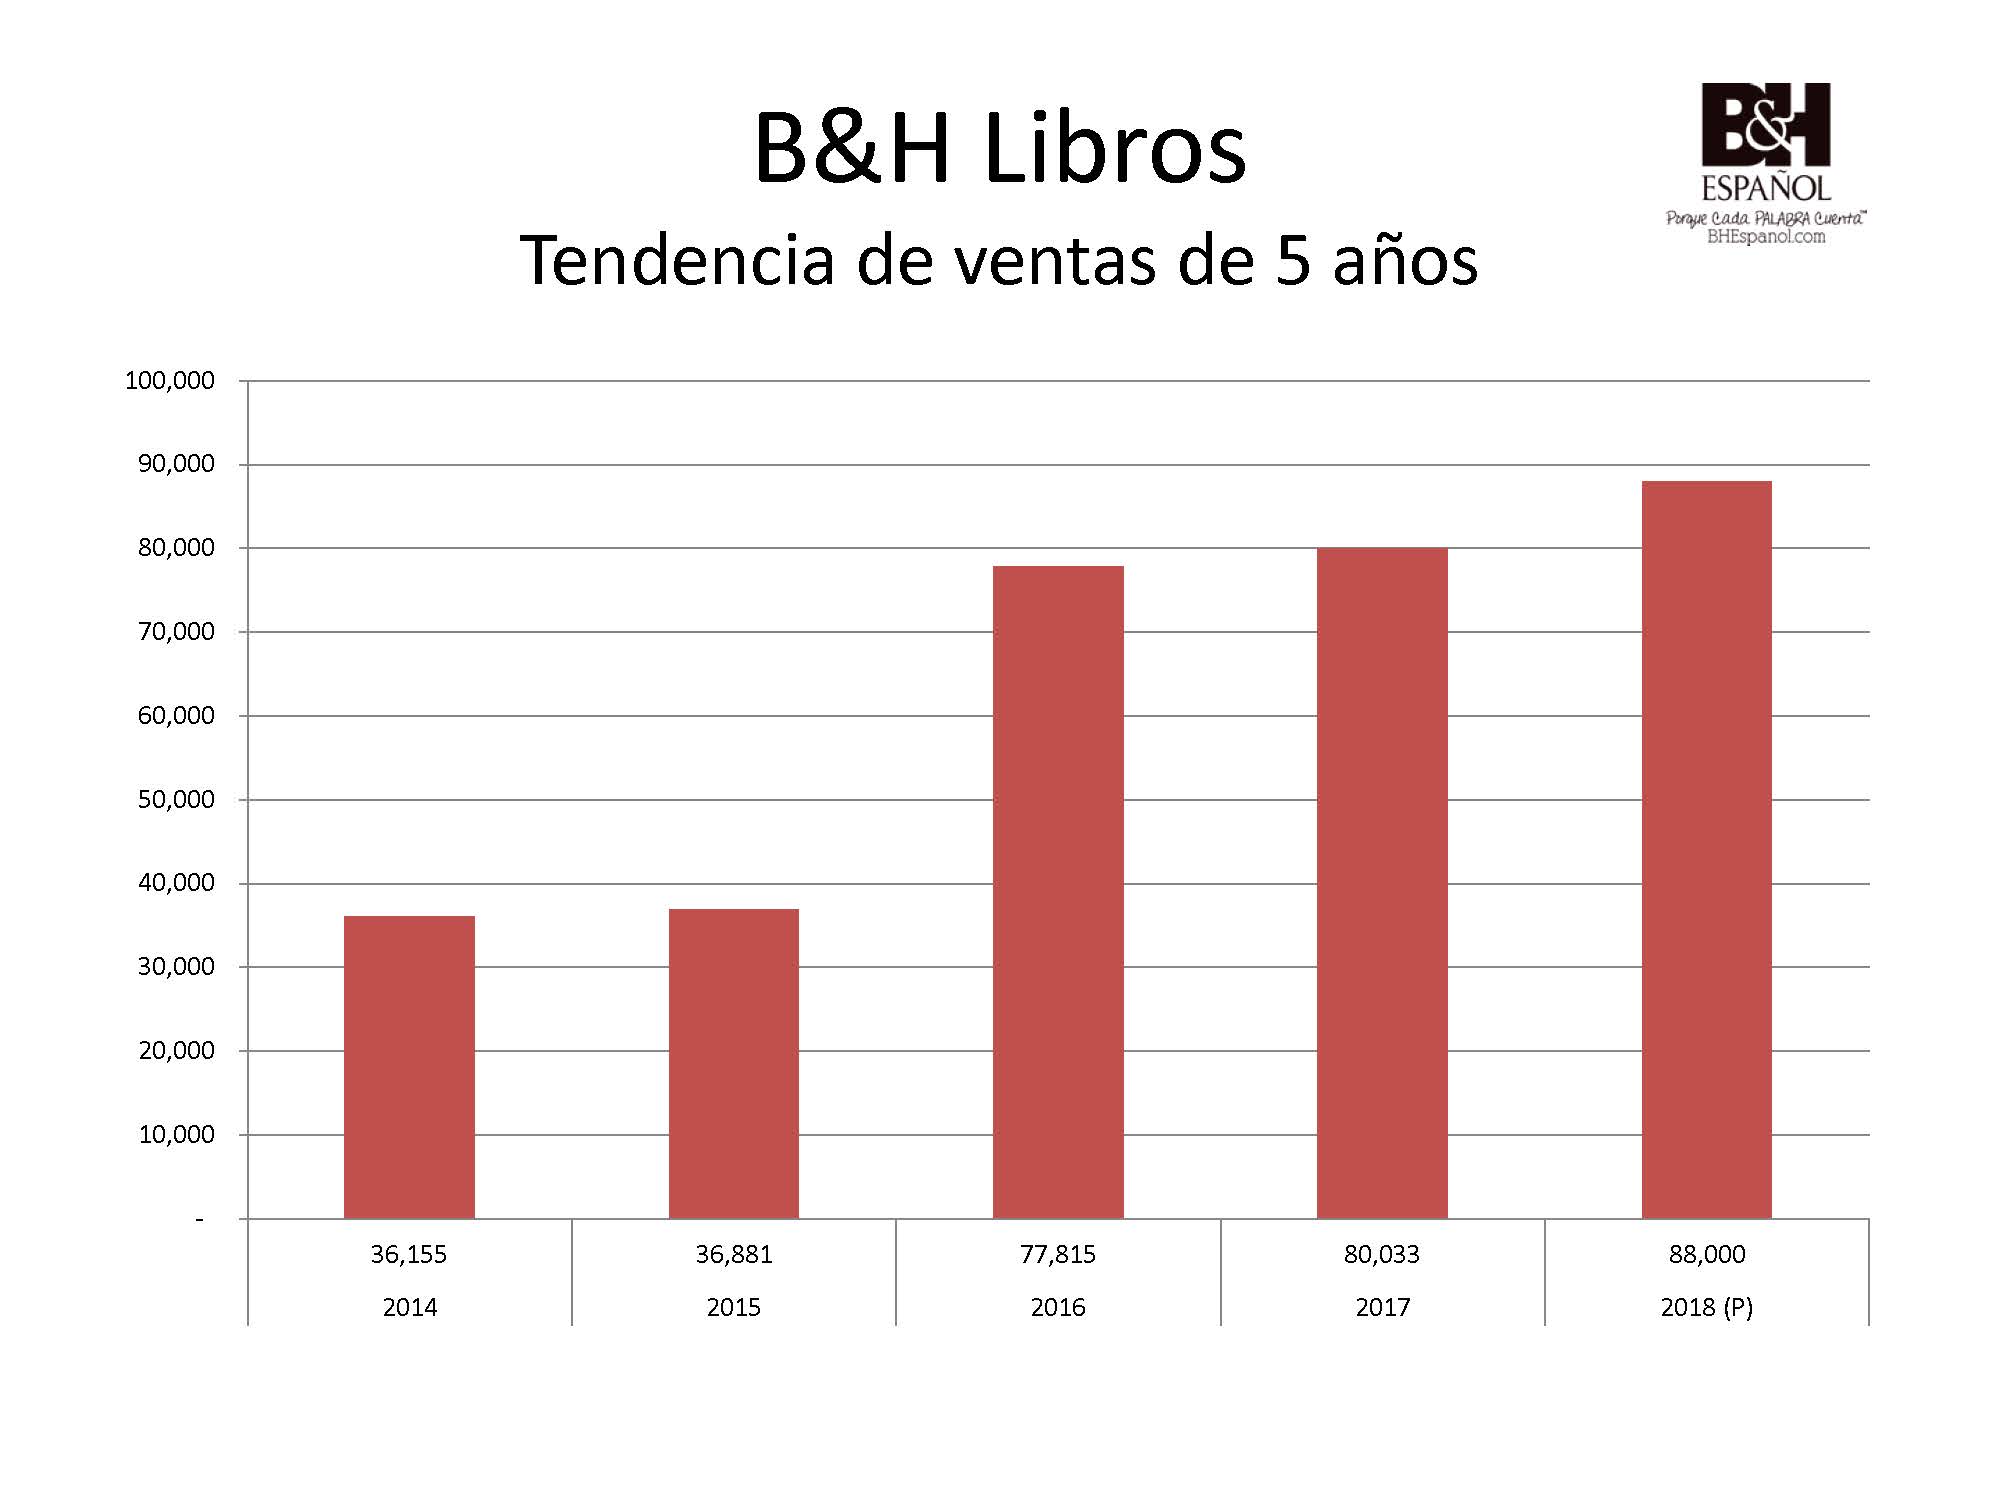 B&H celebra crecimiento año con año en programa de libros